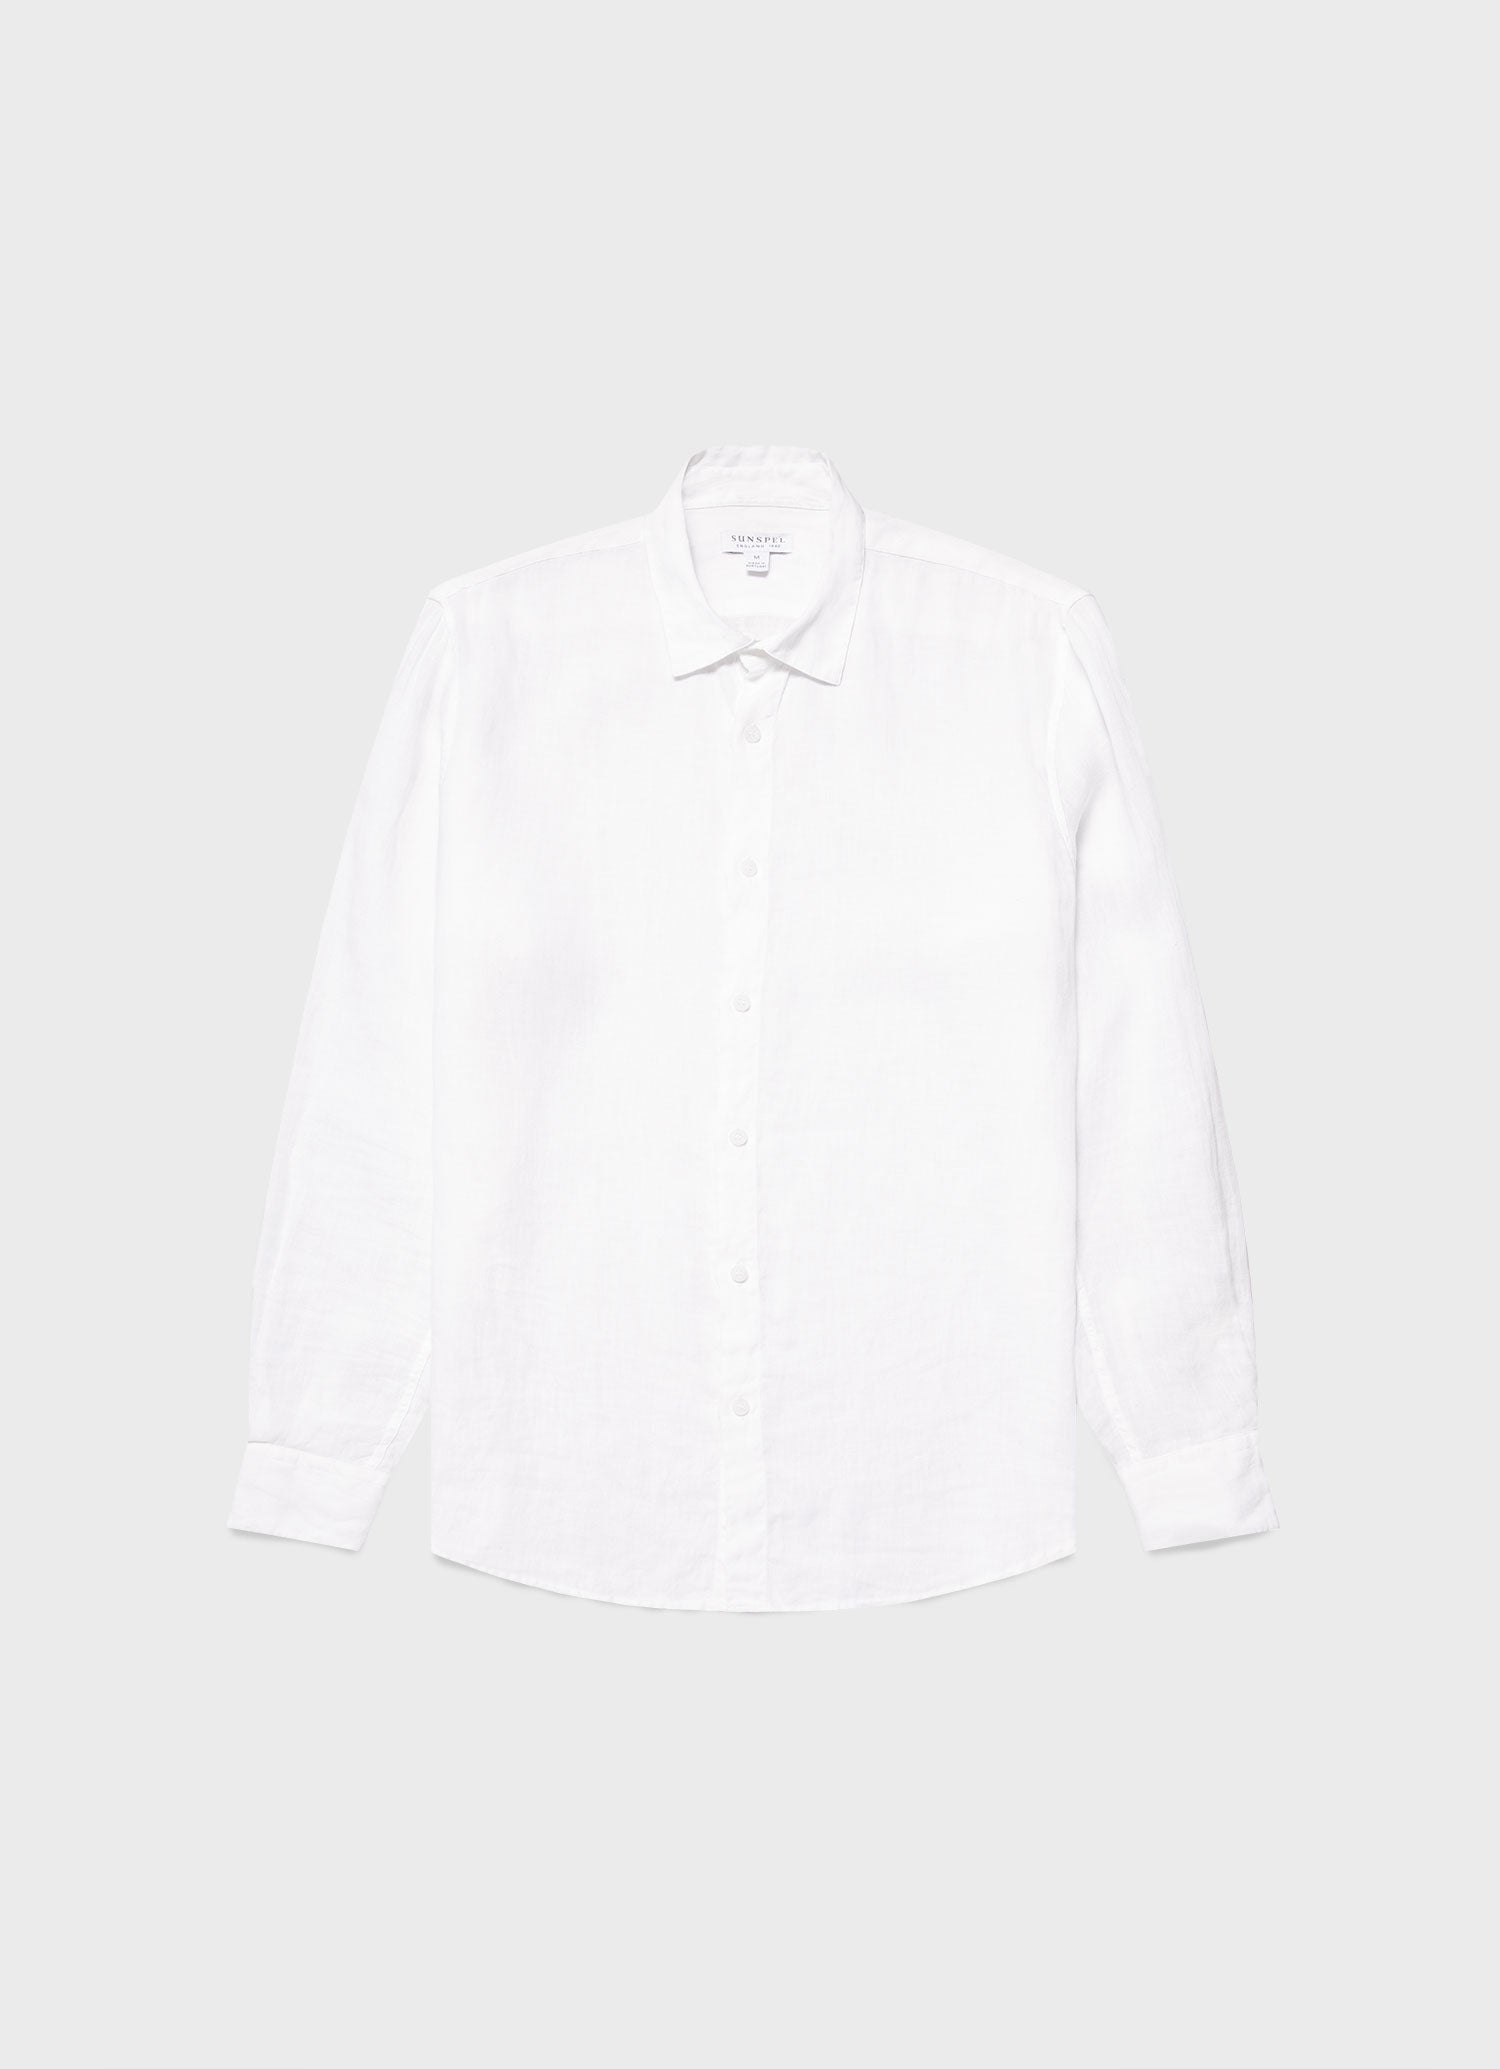 Men's Linen Shirt in White | Sunspel